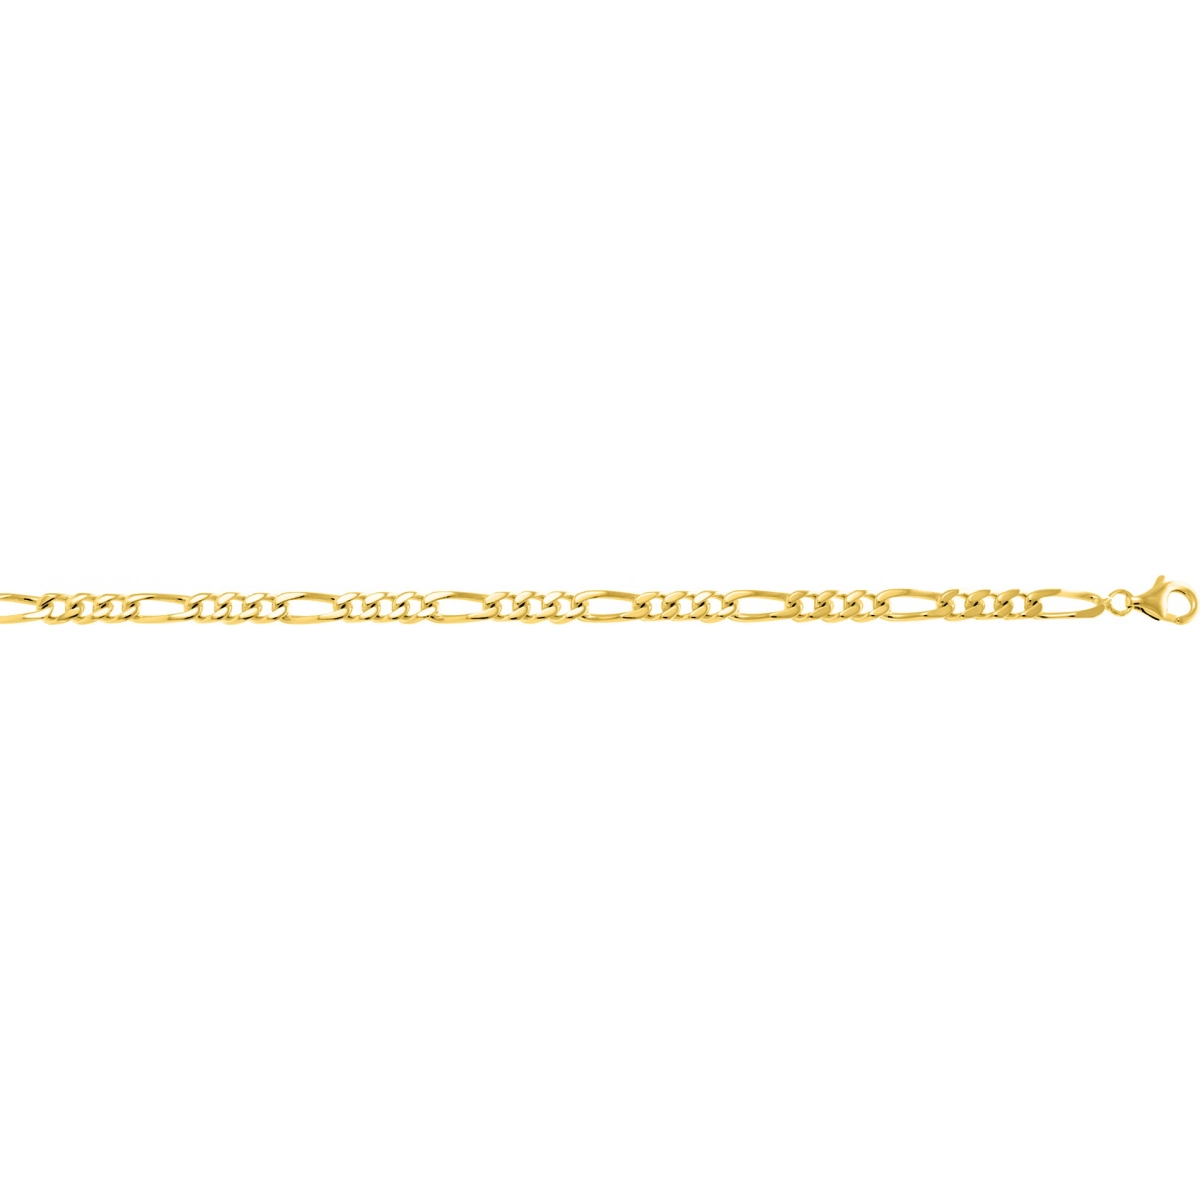 Bracelet gold plated Brass Lua Blanca  224661I - Size 22